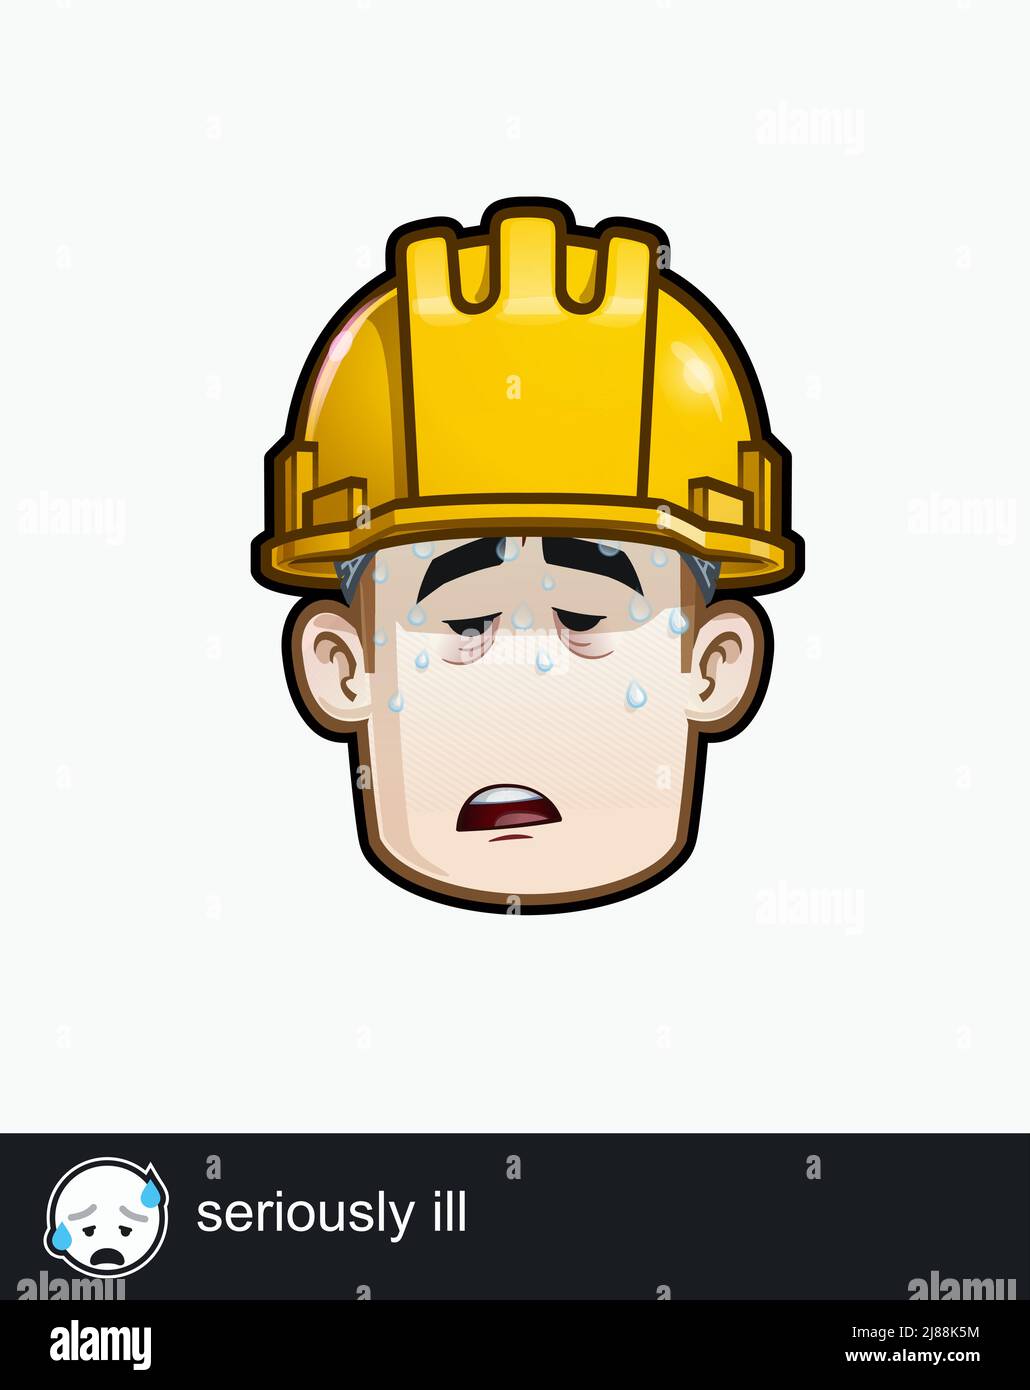 Ikone eines Bauarbeiters mit schwer kranker emotionaler Ausdruckskraft. Alle Elemente übersichtlich auf gut beschriebenen Ebenen und Gruppen. Stock Vektor